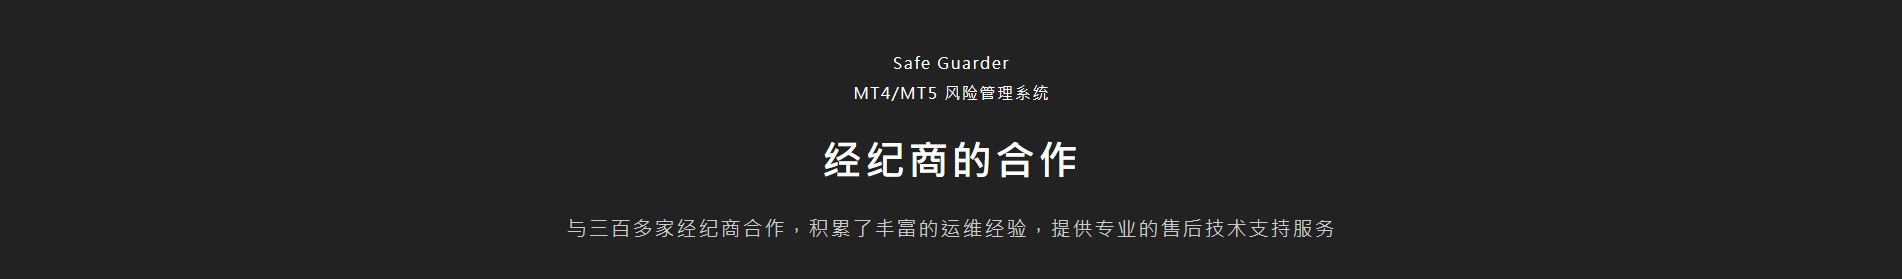 MT4/MT5 风险管理系统